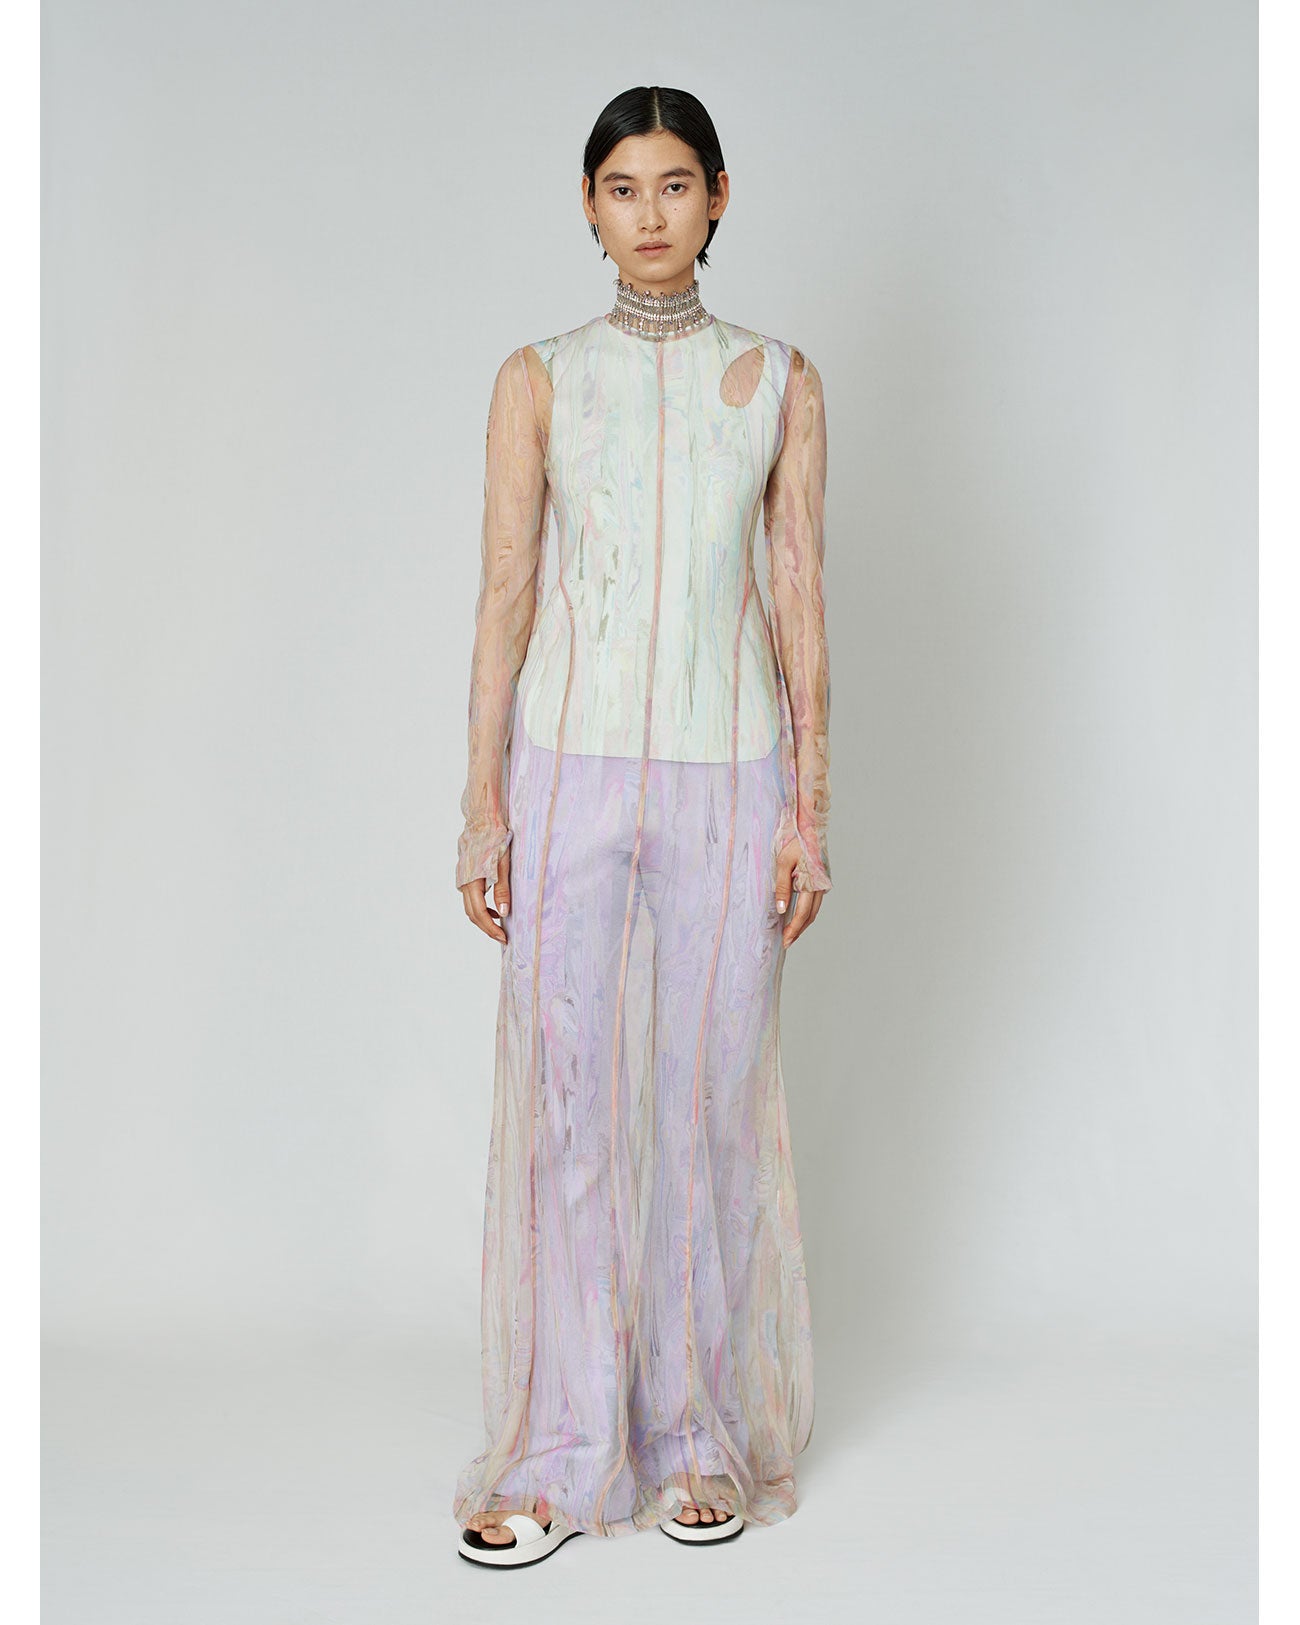 メカニカル Mame Kurogouchi Marble Print Dress size2 - 通販 - www